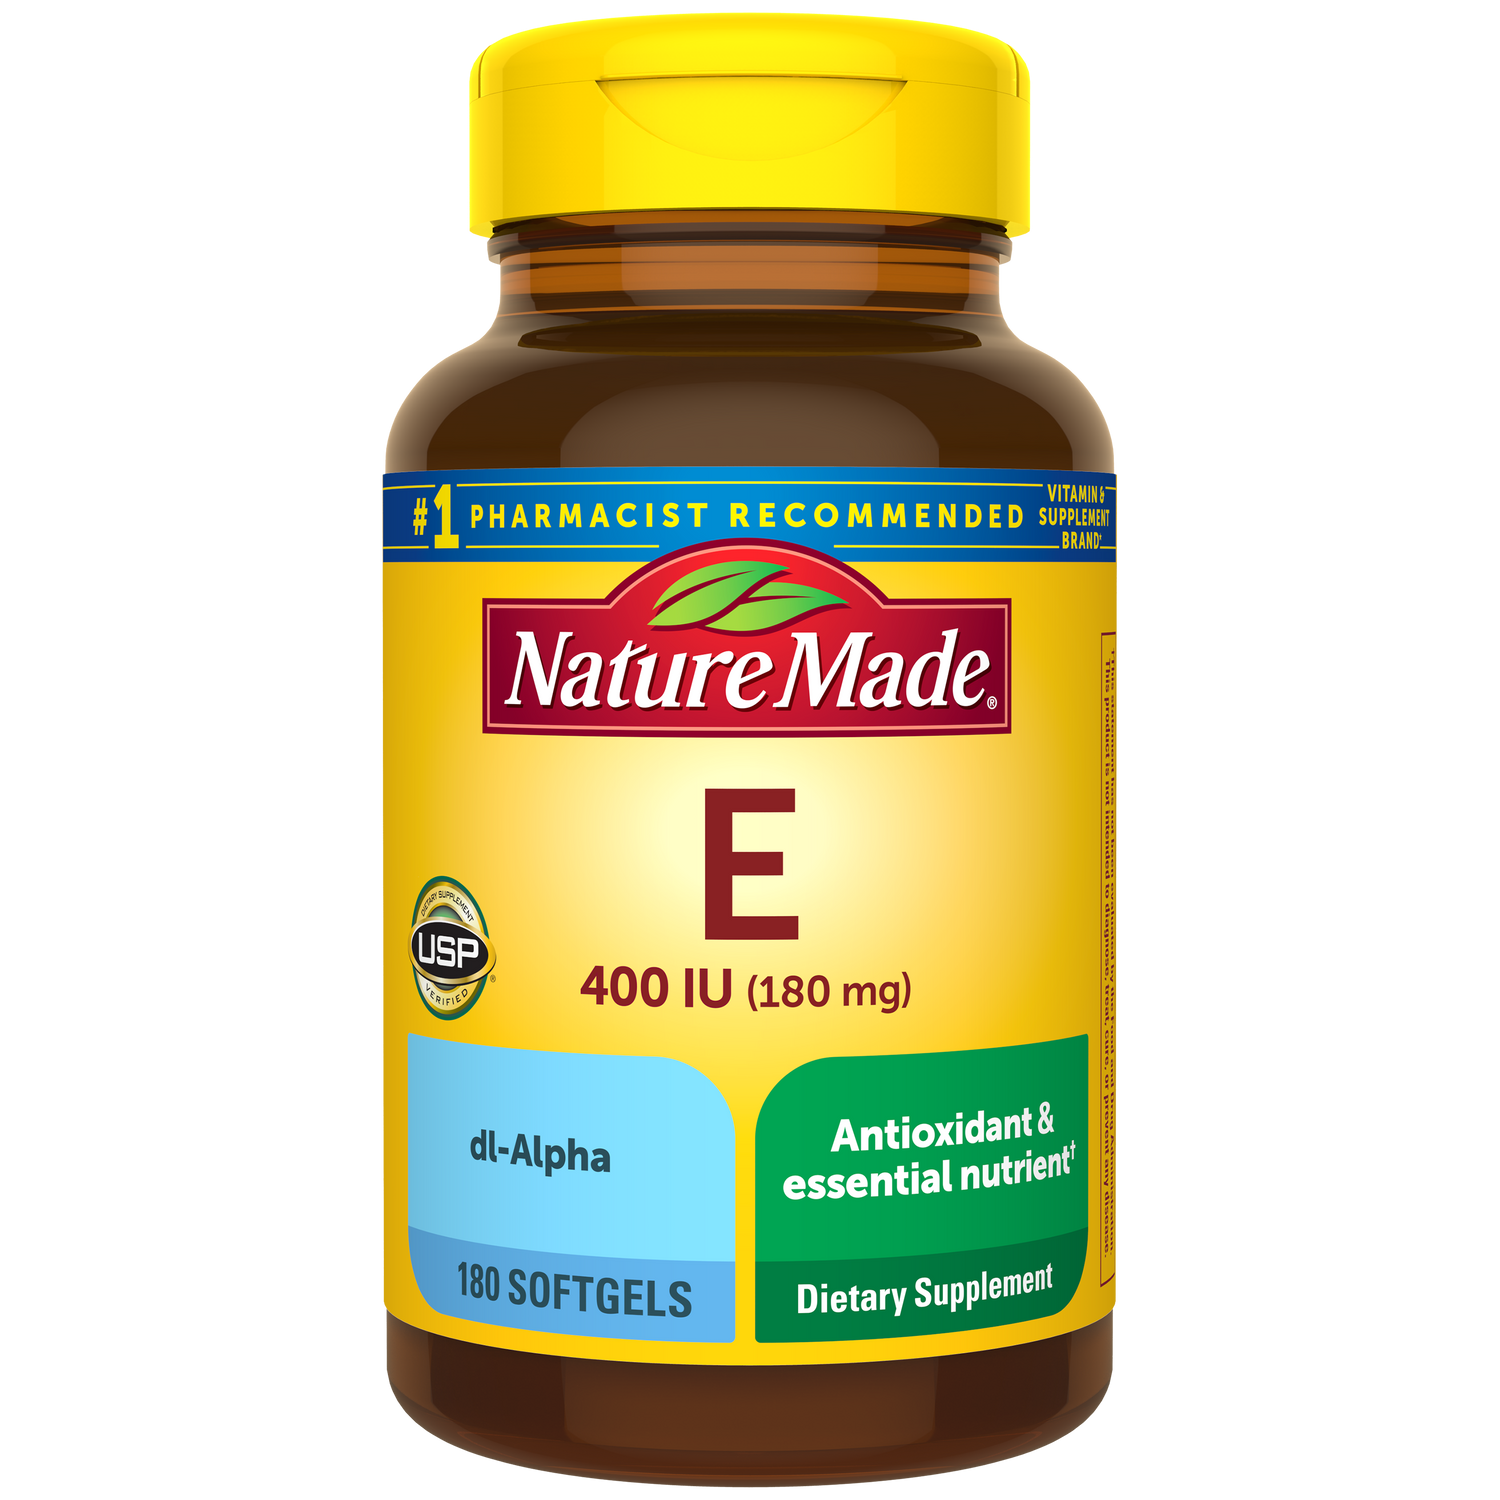 Vitamin E 400 IU (180 mg) dl-Alpha Softgels | 180